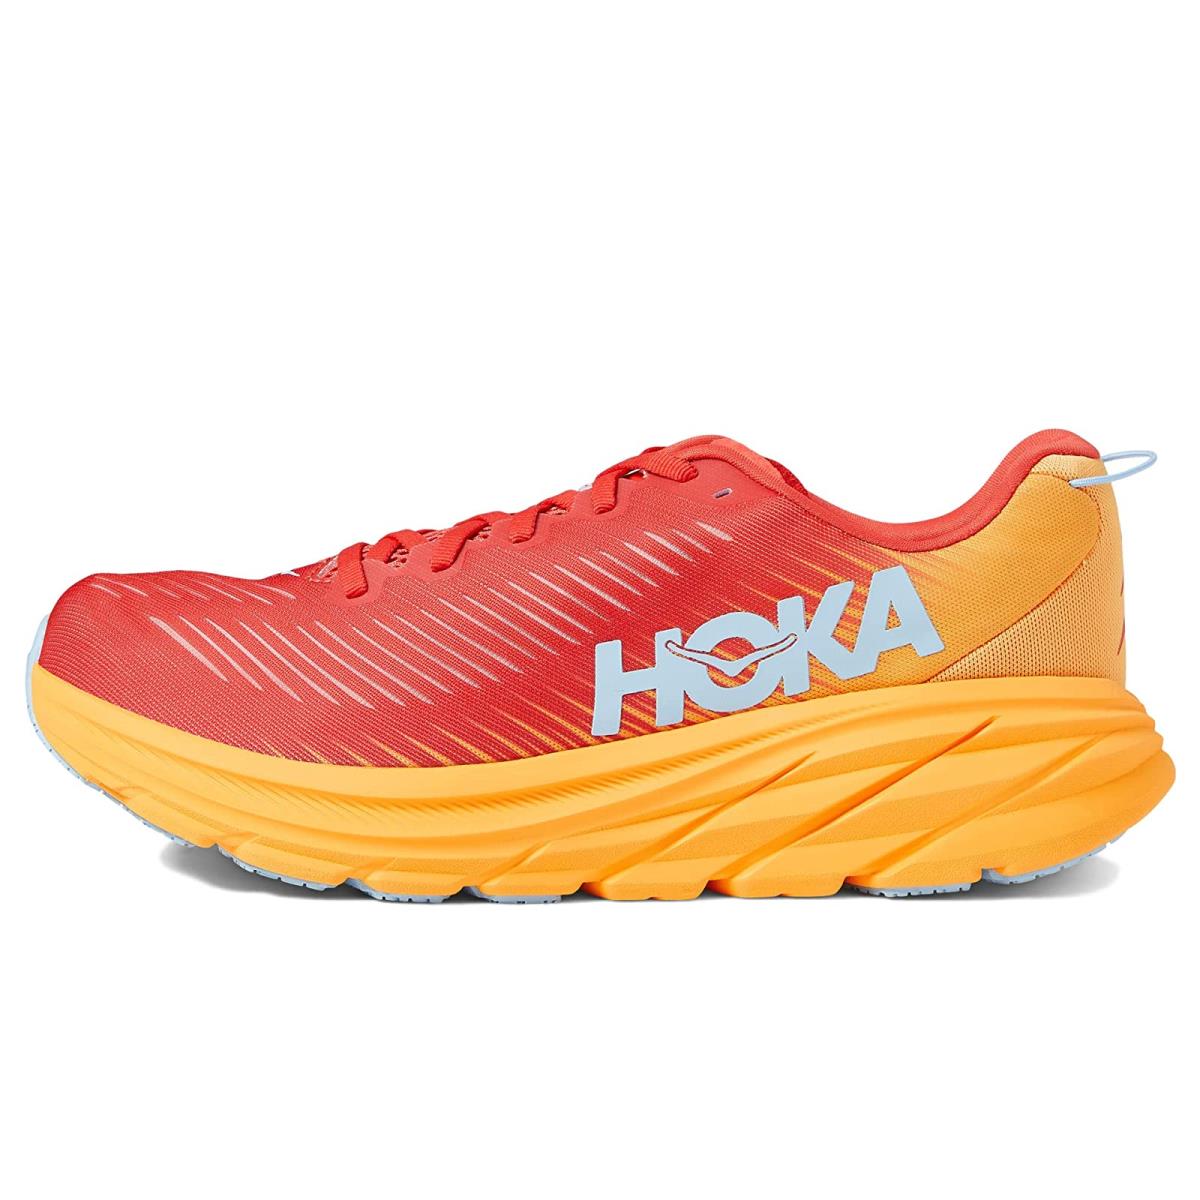 Hoka Rincon 3 Men's Everyday Running Shoe - Fiesta / Amber Yellow - Size 10